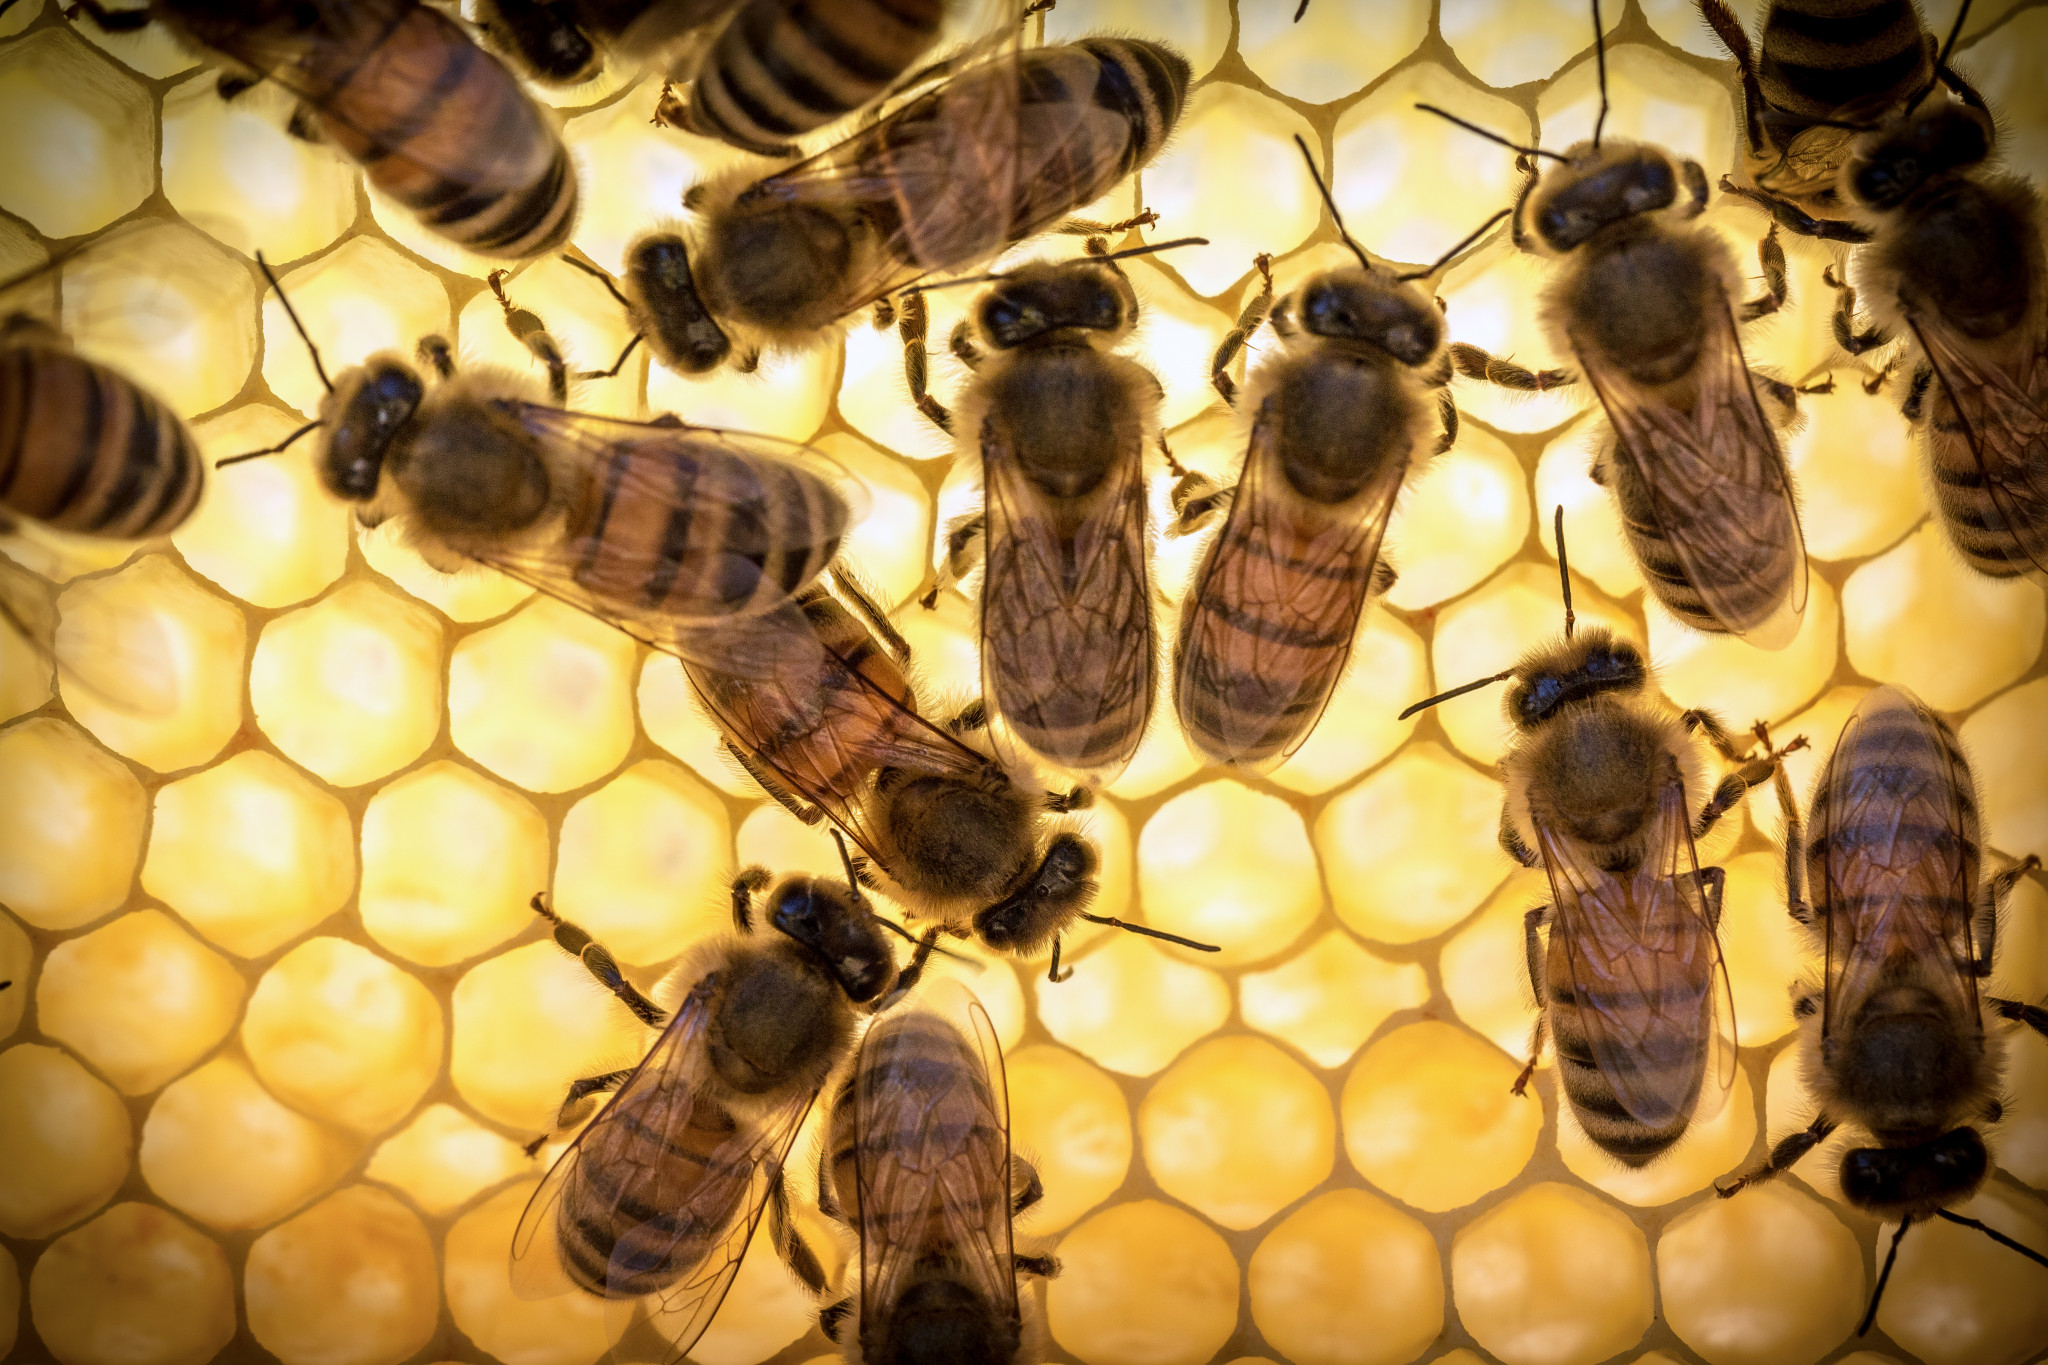 Včelí mateří kašička se nedoporučuje používat v noci, protože pod jejím vlivem zvyšuje nervovou aktivitu a možnou nespavost